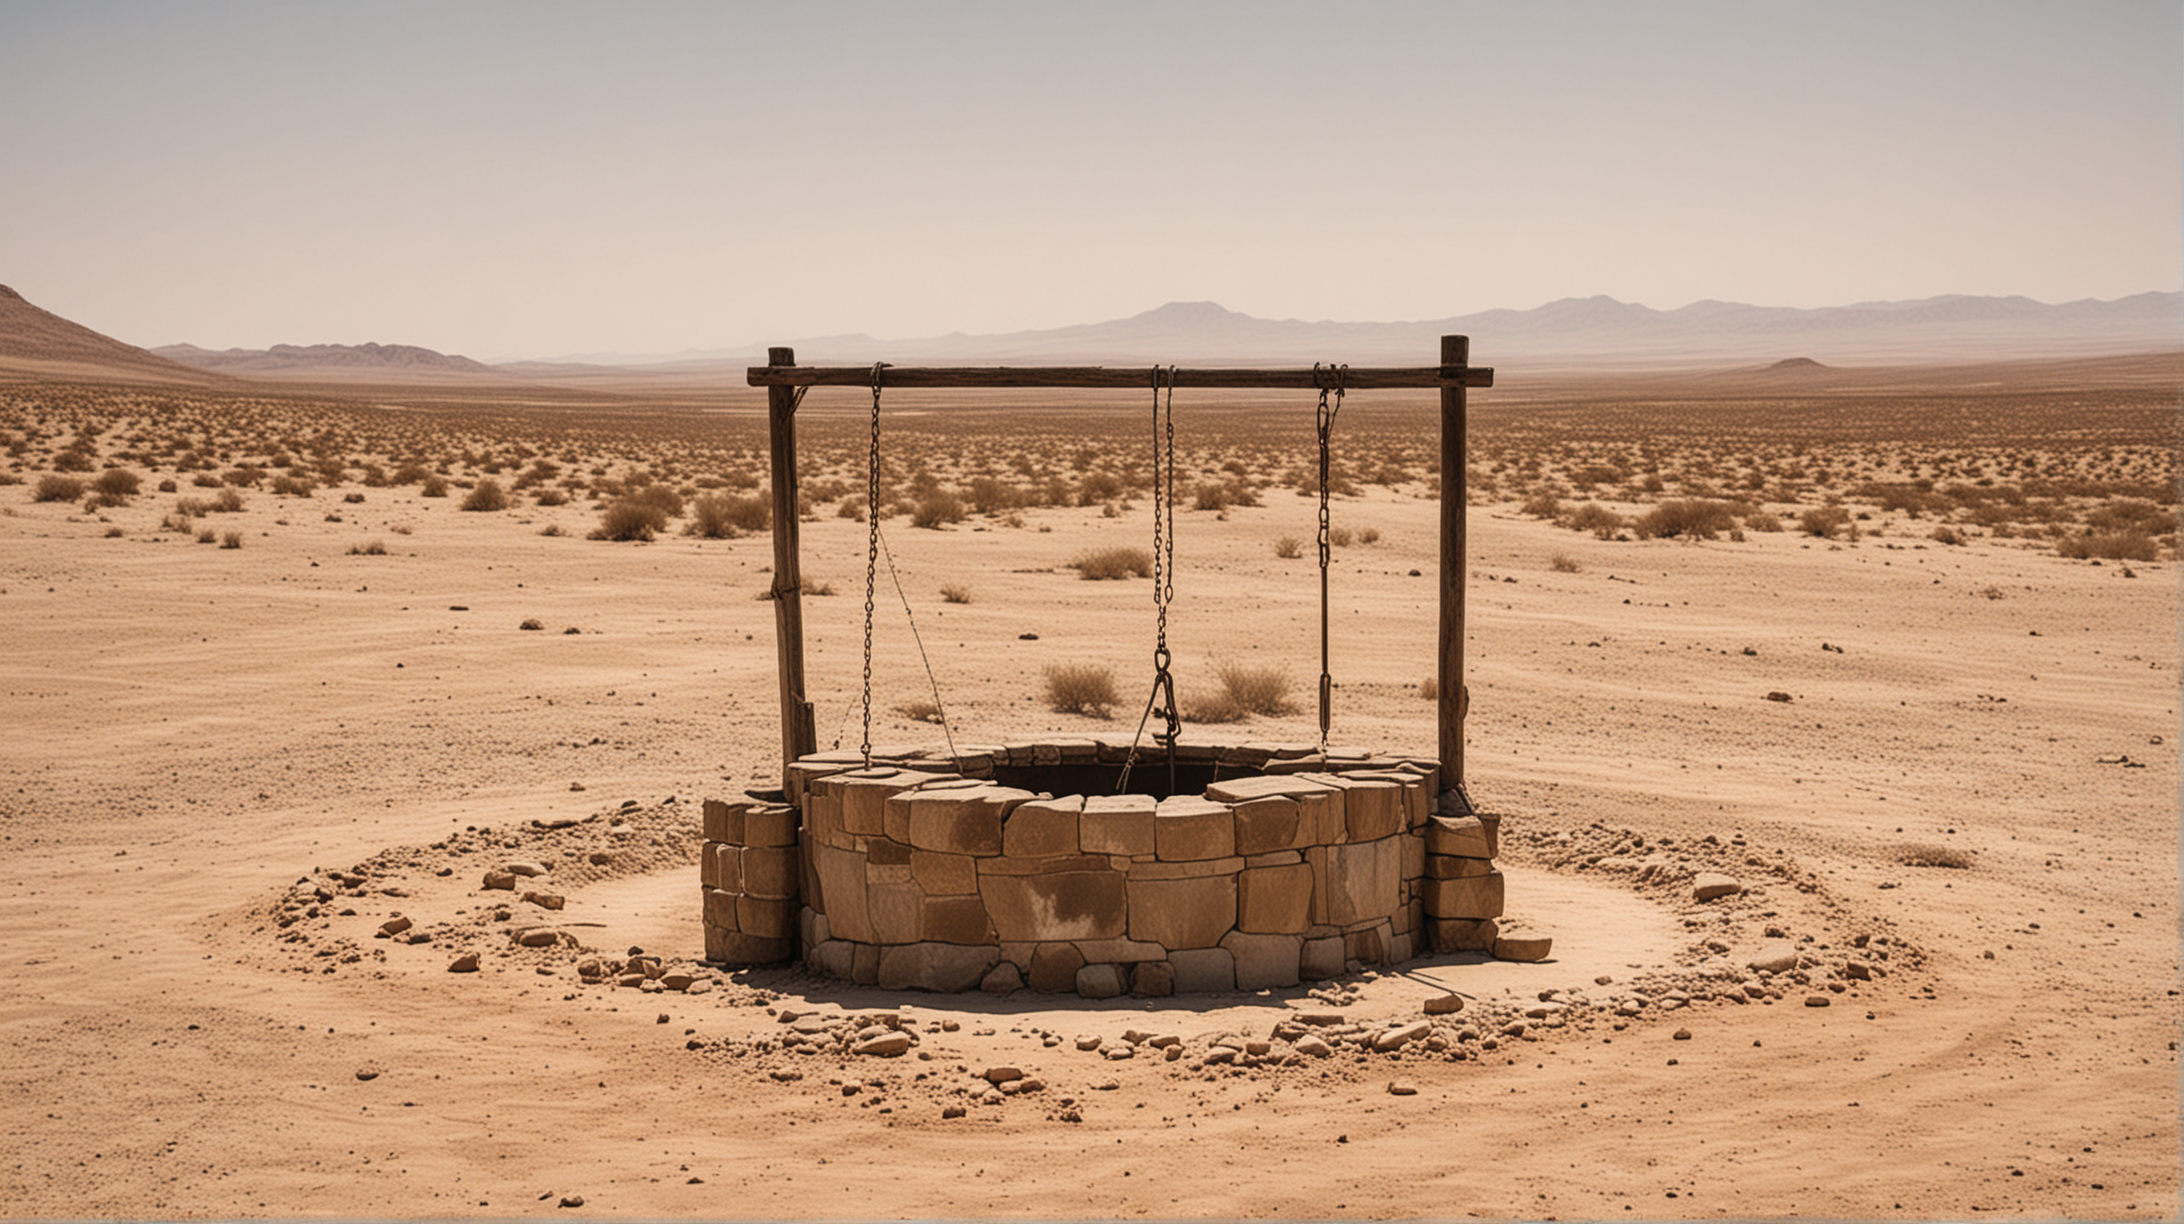 a well in desert